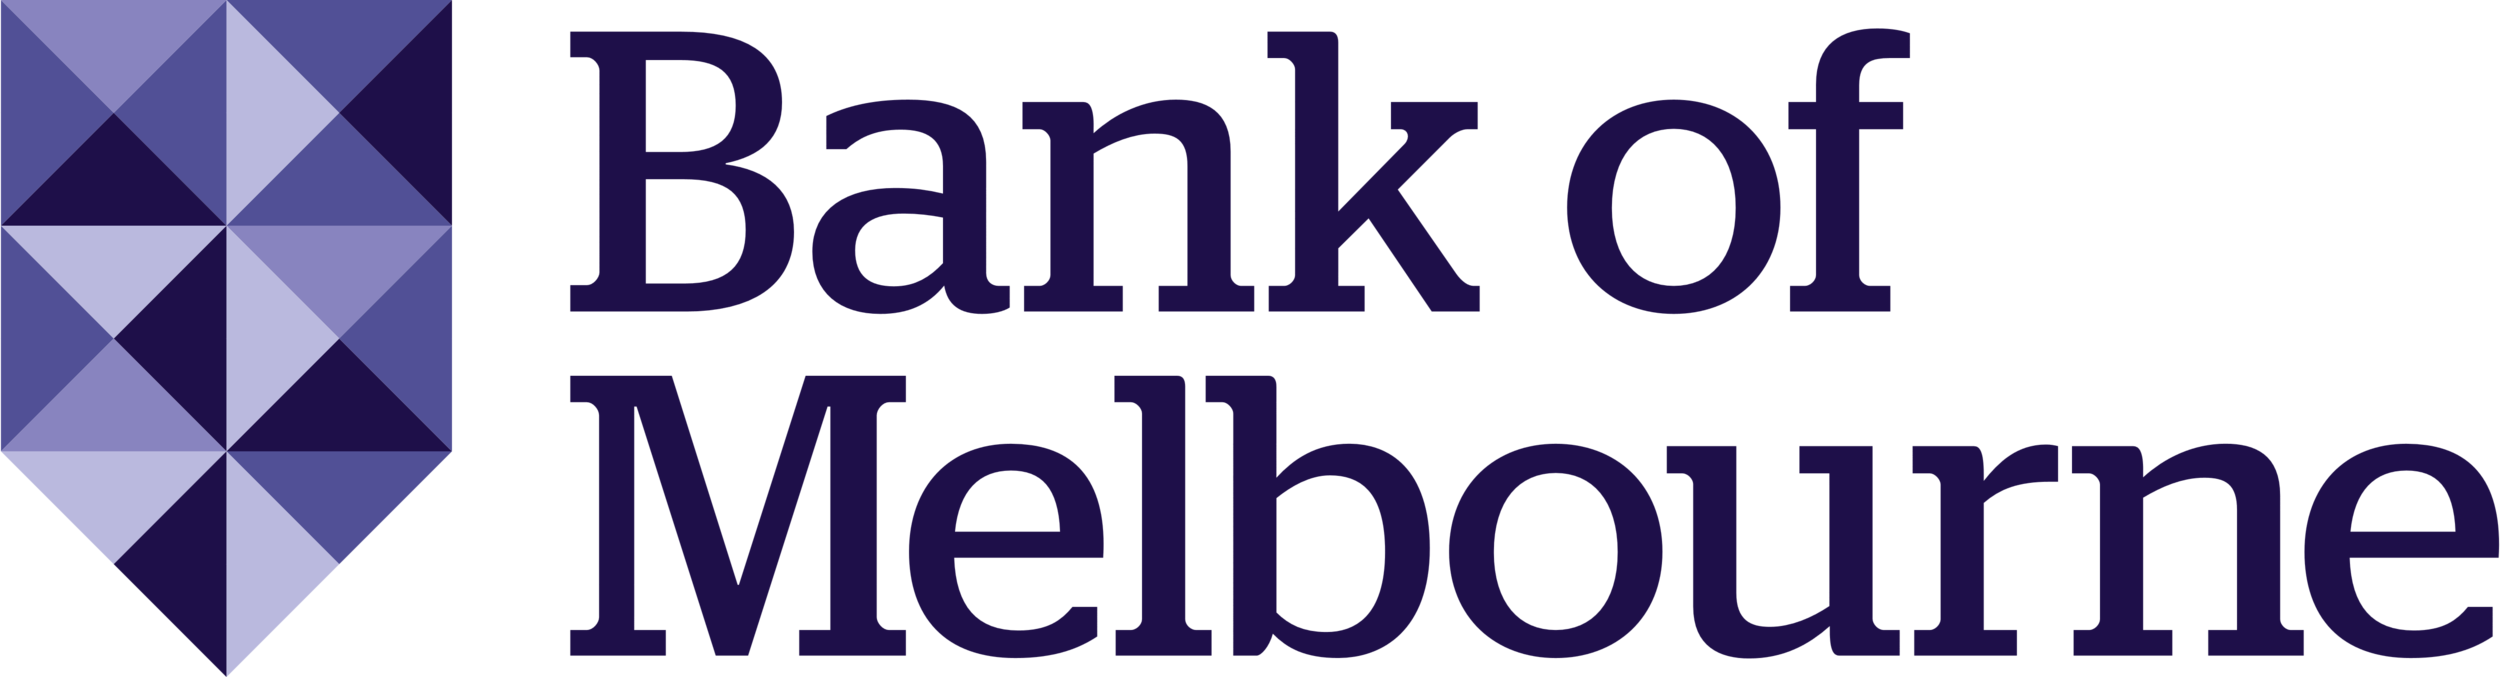 Bank_of_Melbourne_logo.png